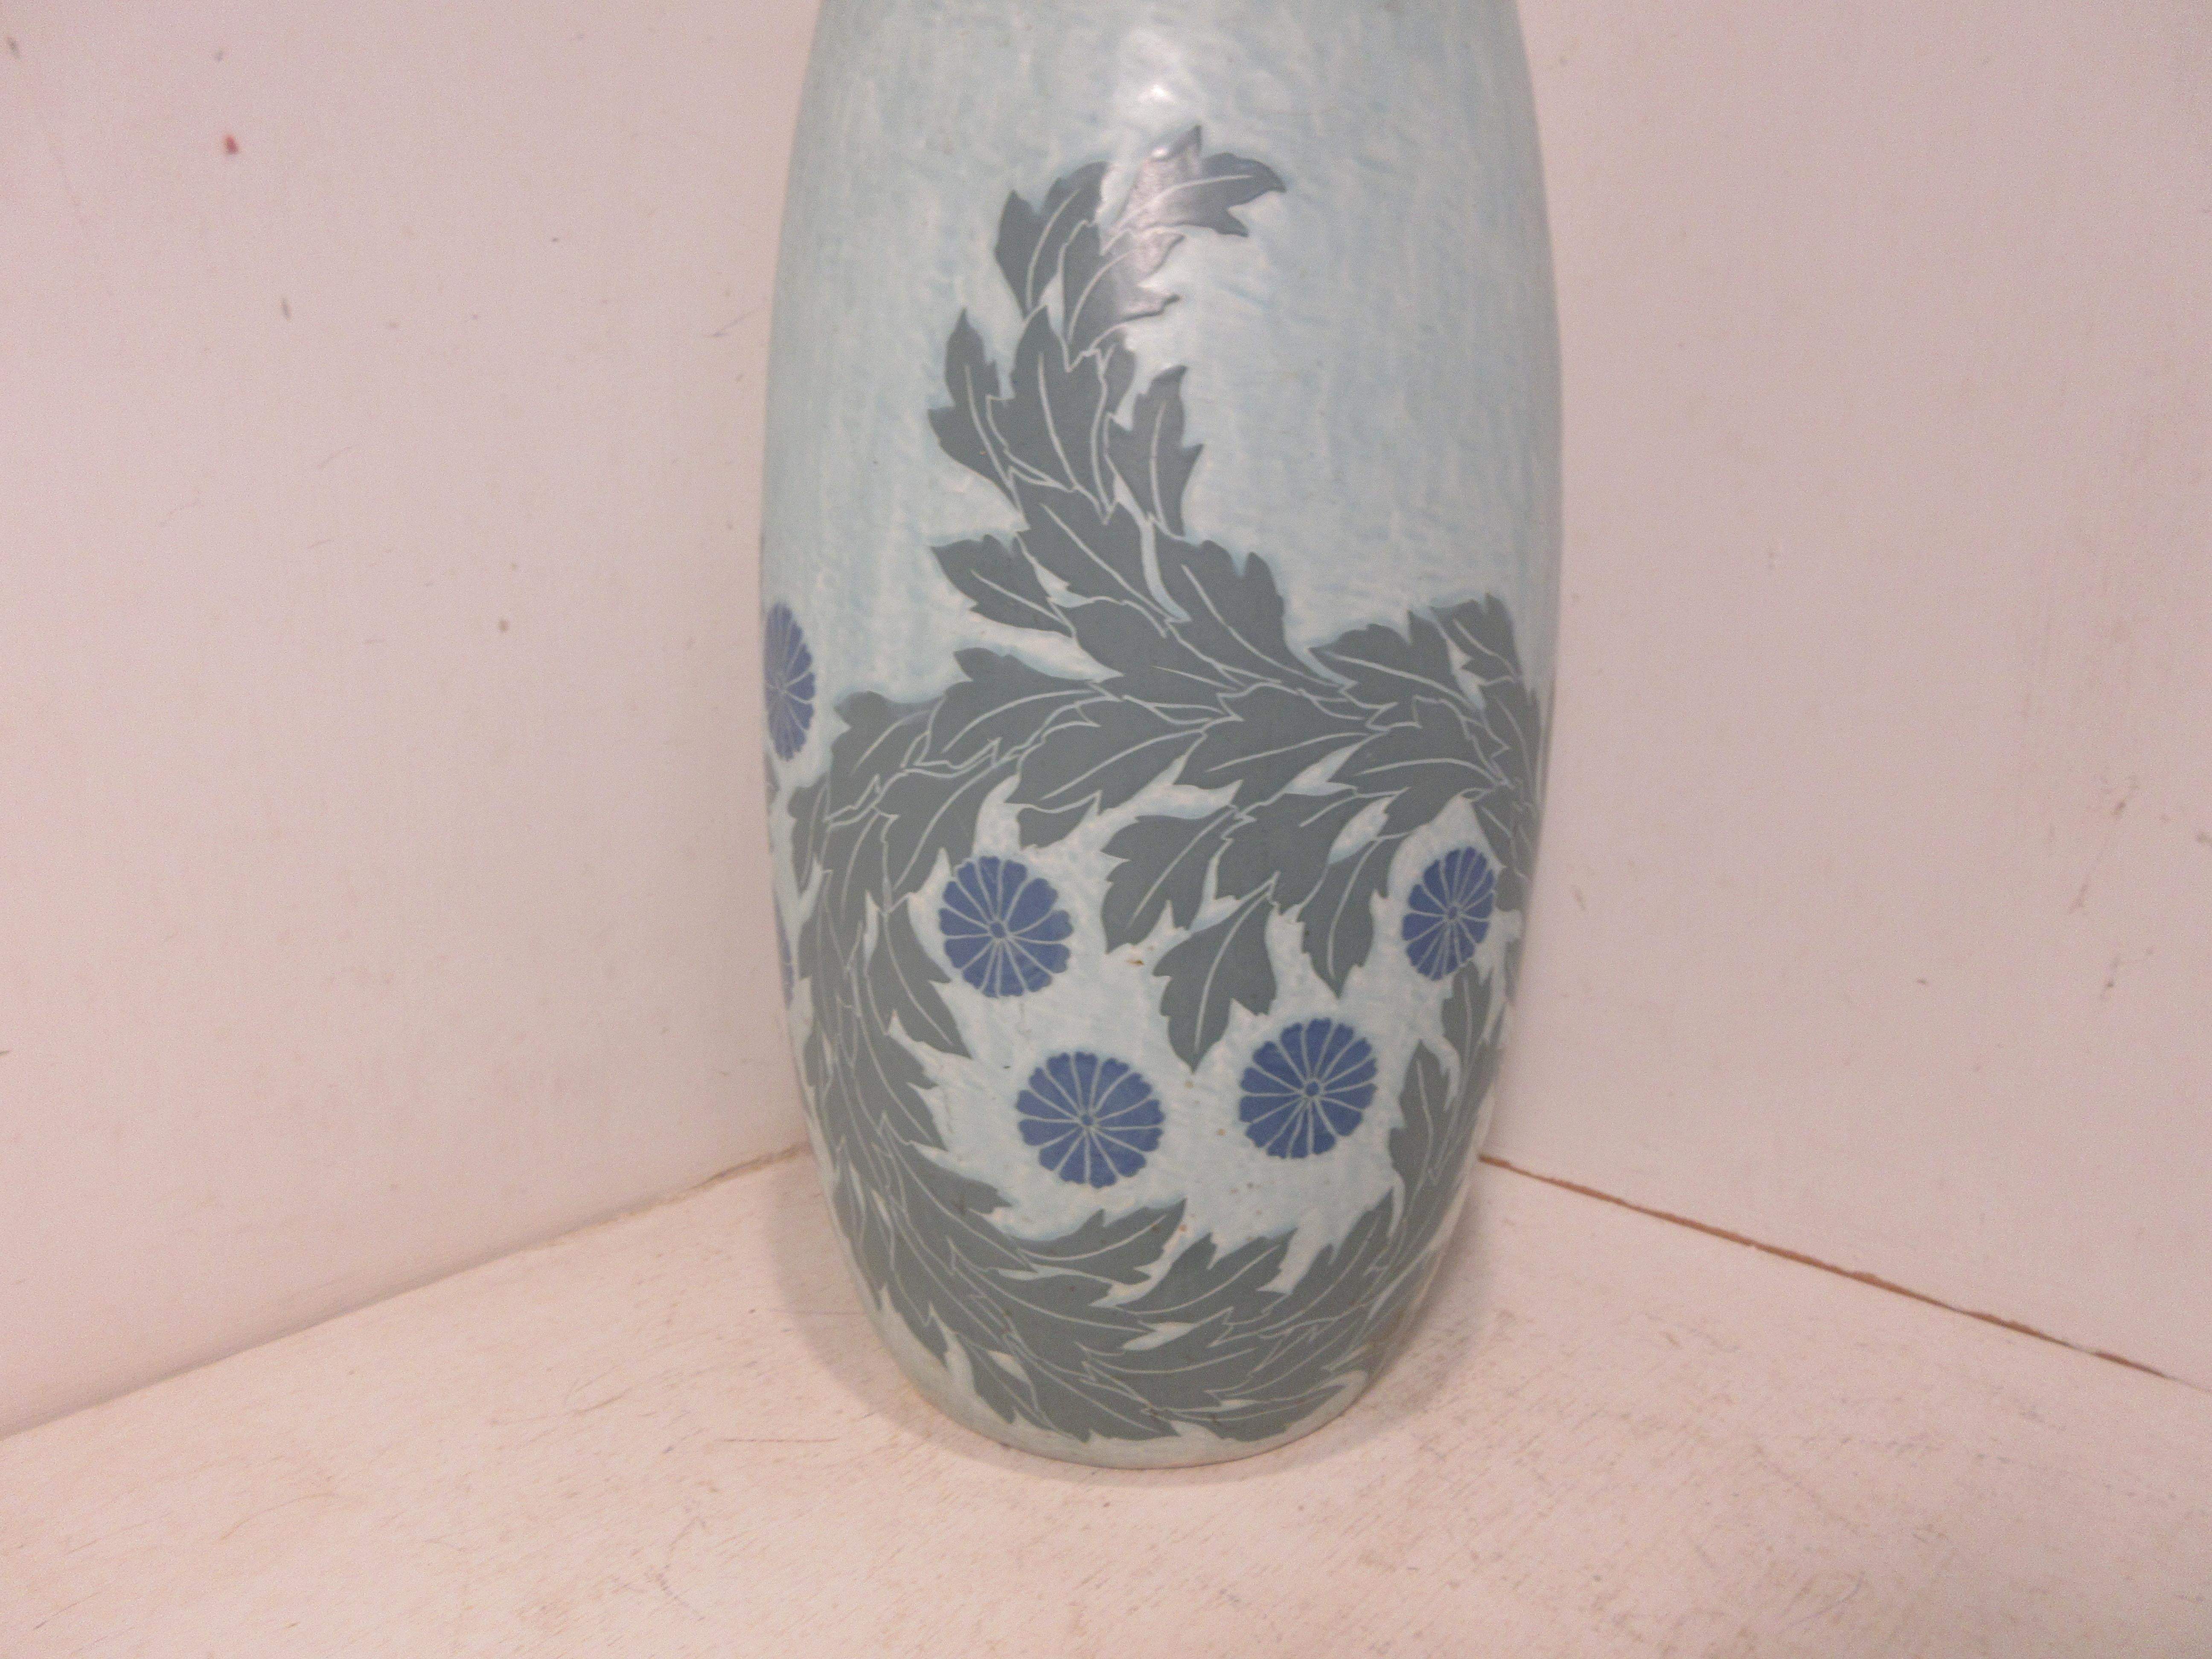 Il s'agit d'un vase Sgraffito fait à la main et unique, réalisé par l'artiste céramiste suédois Josef Ekberg en 1911. Il était l'un des meilleurs artistes céramistes de Suède à l'époque. Il a commencé à travailler à la fonderie de Gustavsberg en